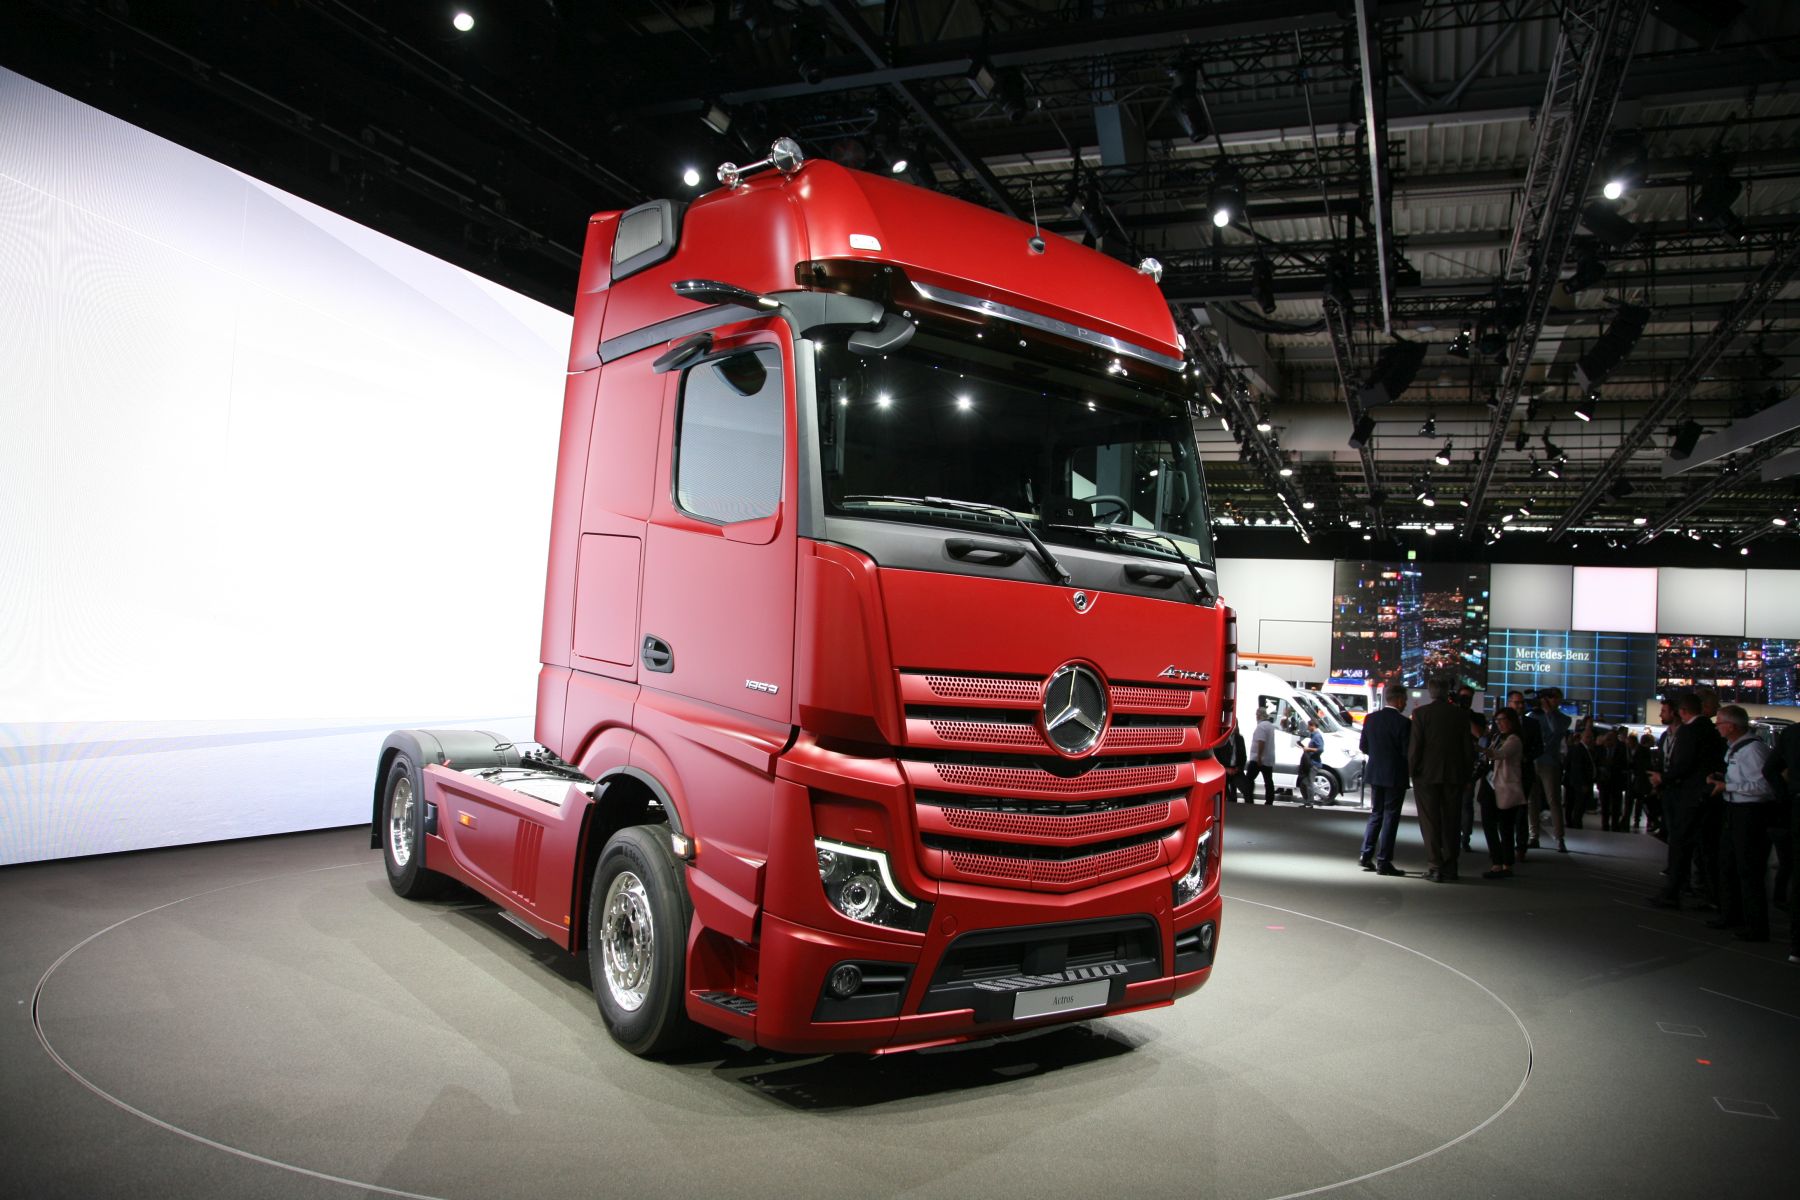 Det røde «digitale dyret» ble kjørt ut på scenen på Daimlers kjempestand som fylte en hel hall i Hannover.